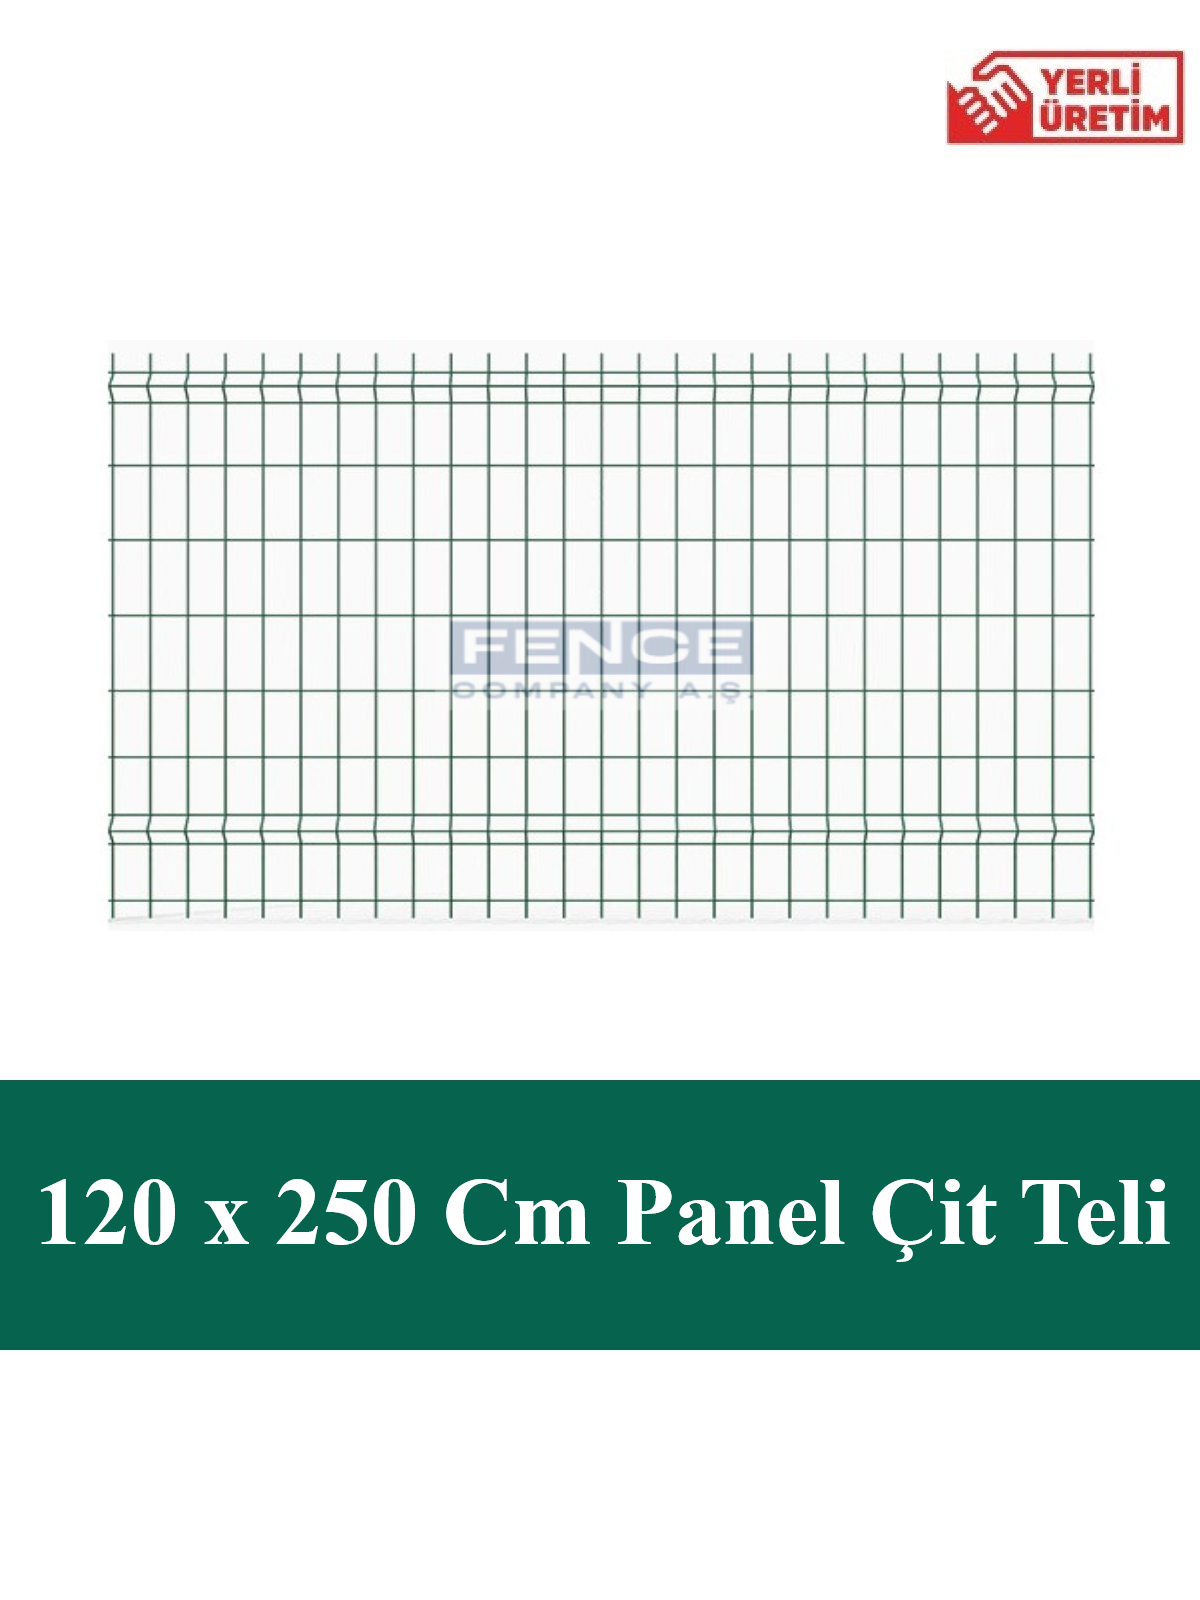 Panel Çit Teli 120 Cm x 250 Cm